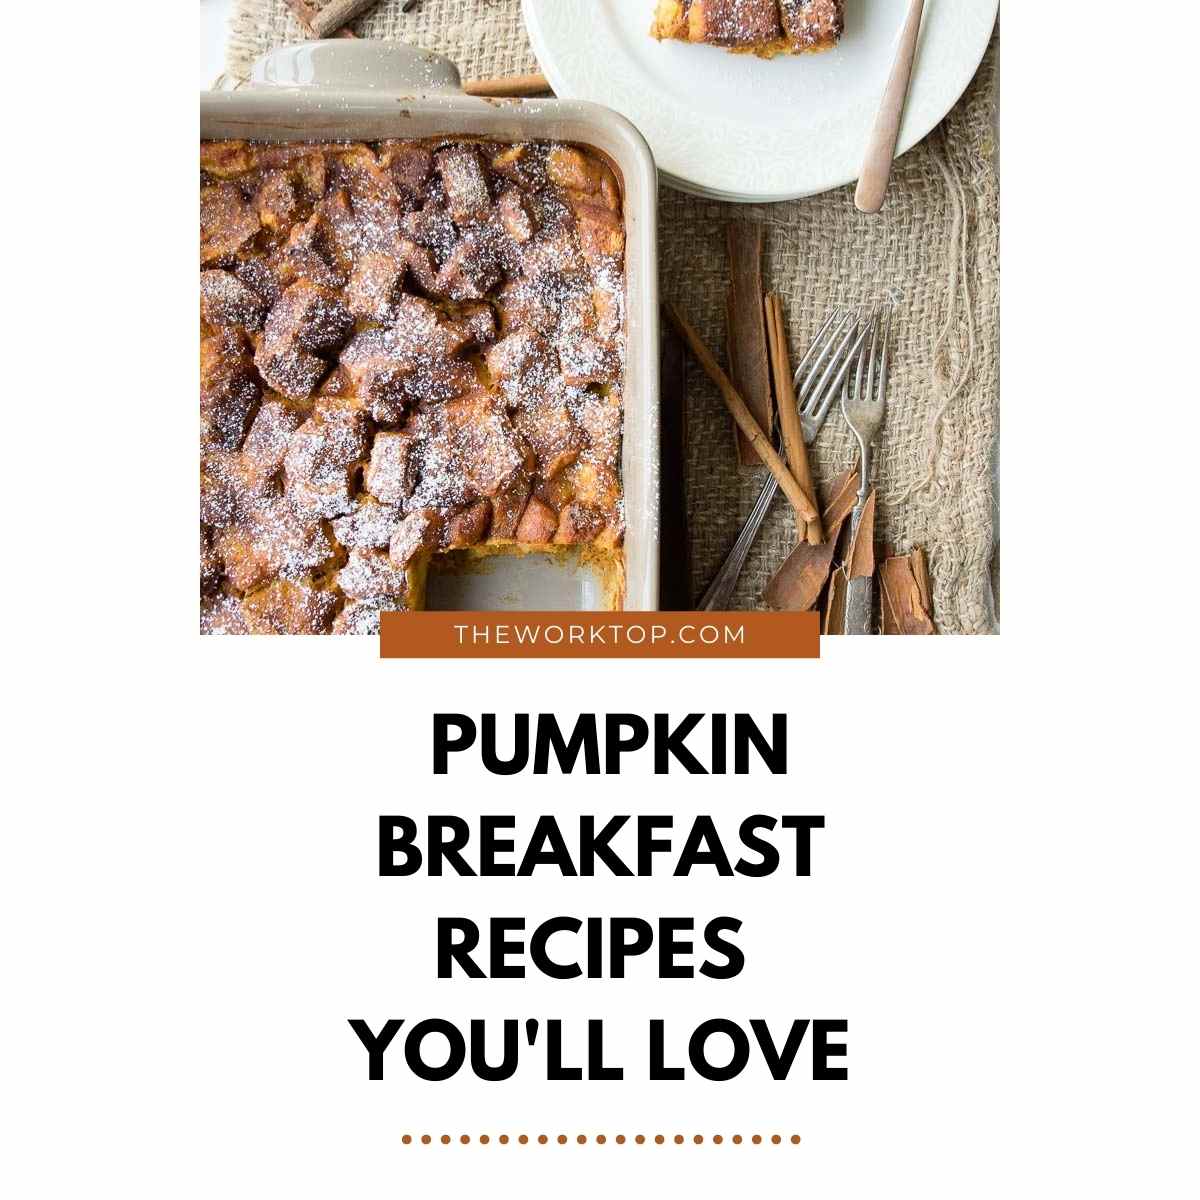 Pumpkin Breakfast Recipes | The Worktop